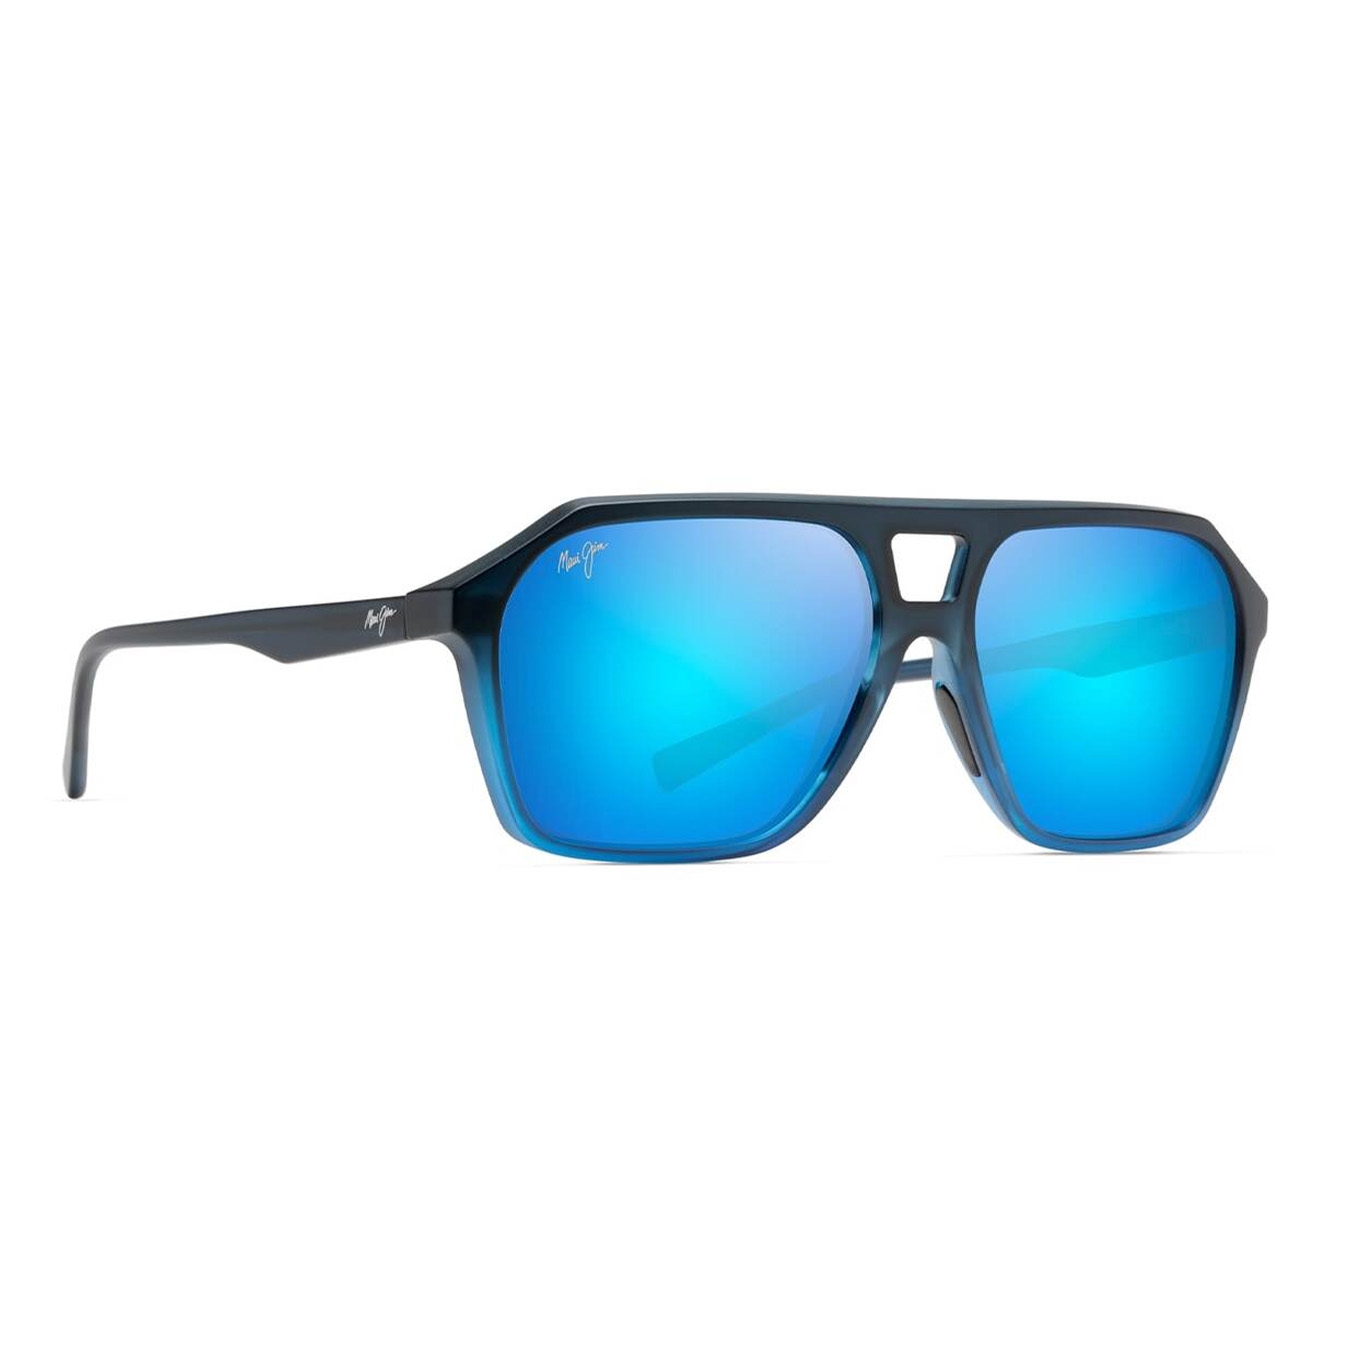 Wedges Polarized Aviator Sunglasses